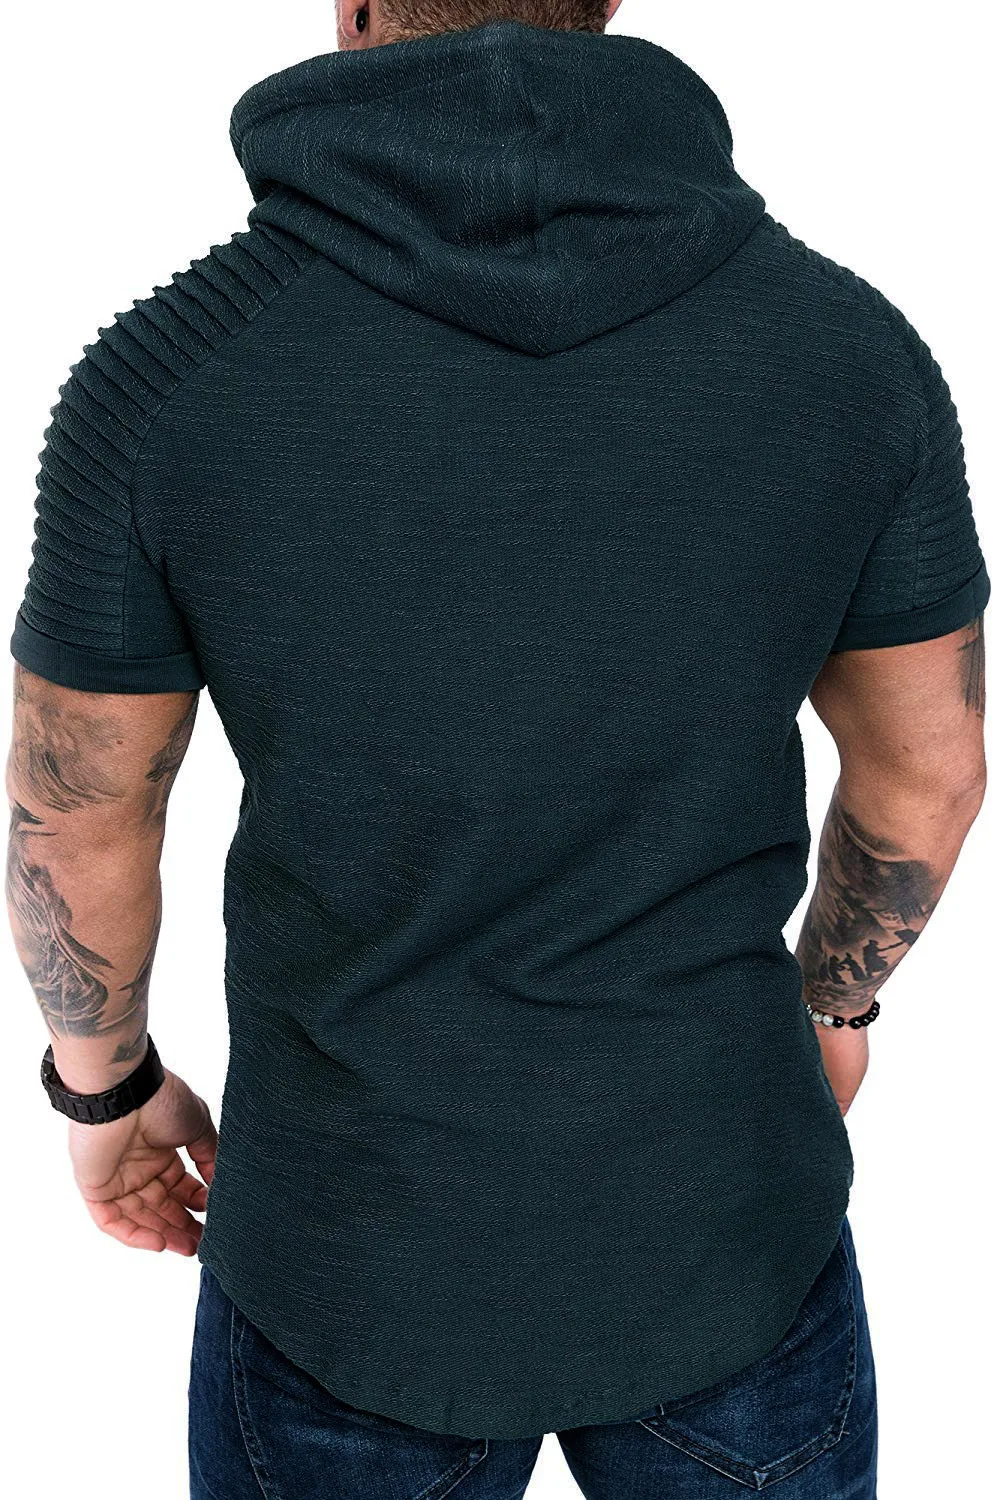 ДАФ печати для мужчин досуг Бренд повседневное с капюшоном Слинг дизайн толстовка рубашка тонкий летний короткий рукав тонкий мужской свитер Y